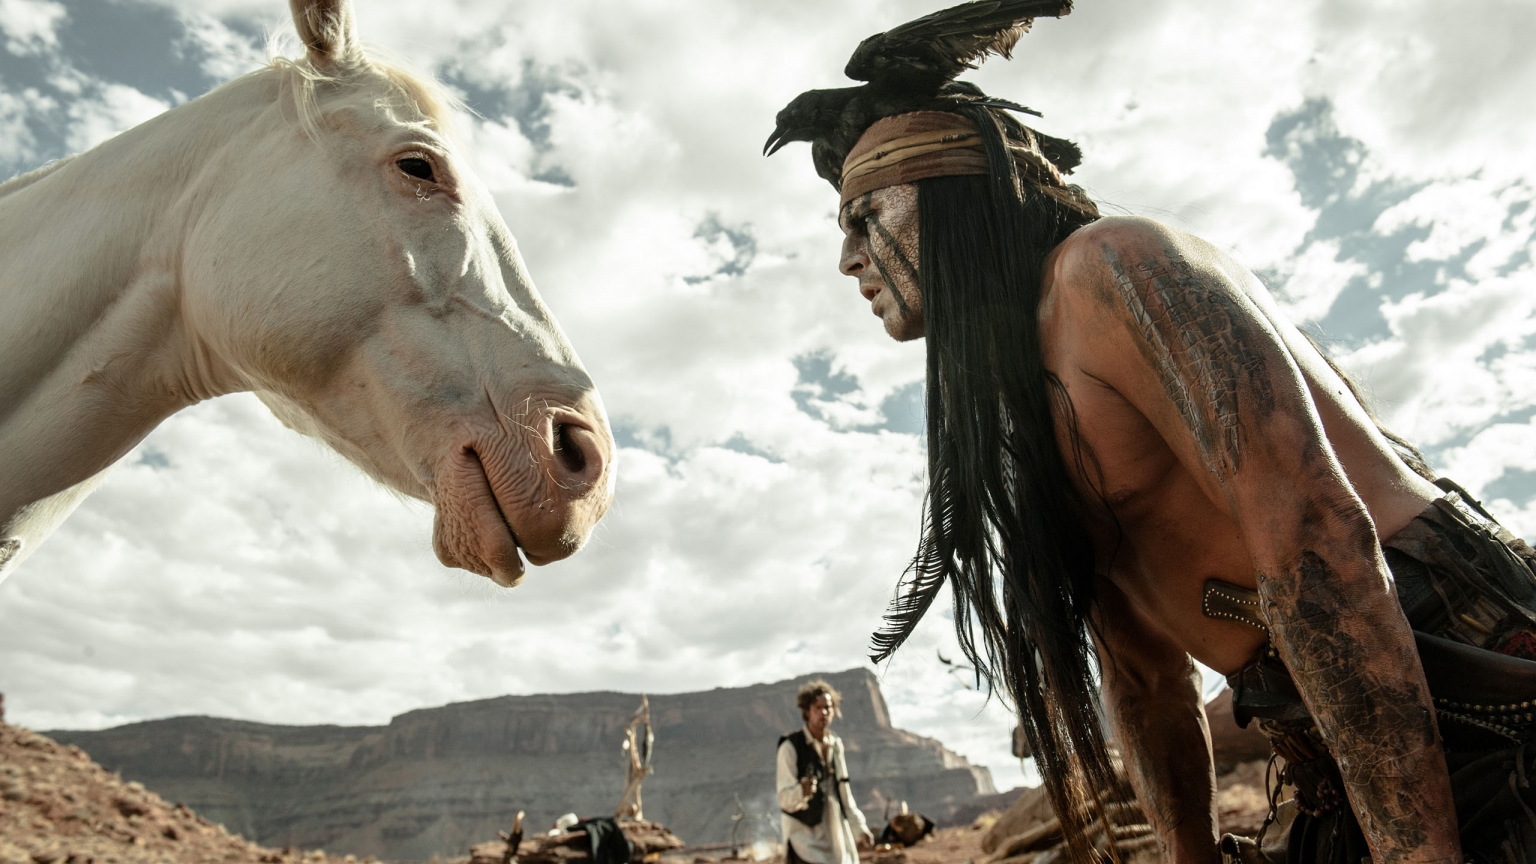 2013 The Lone Ranger Scene for 1536 x 864 HDTV resolution